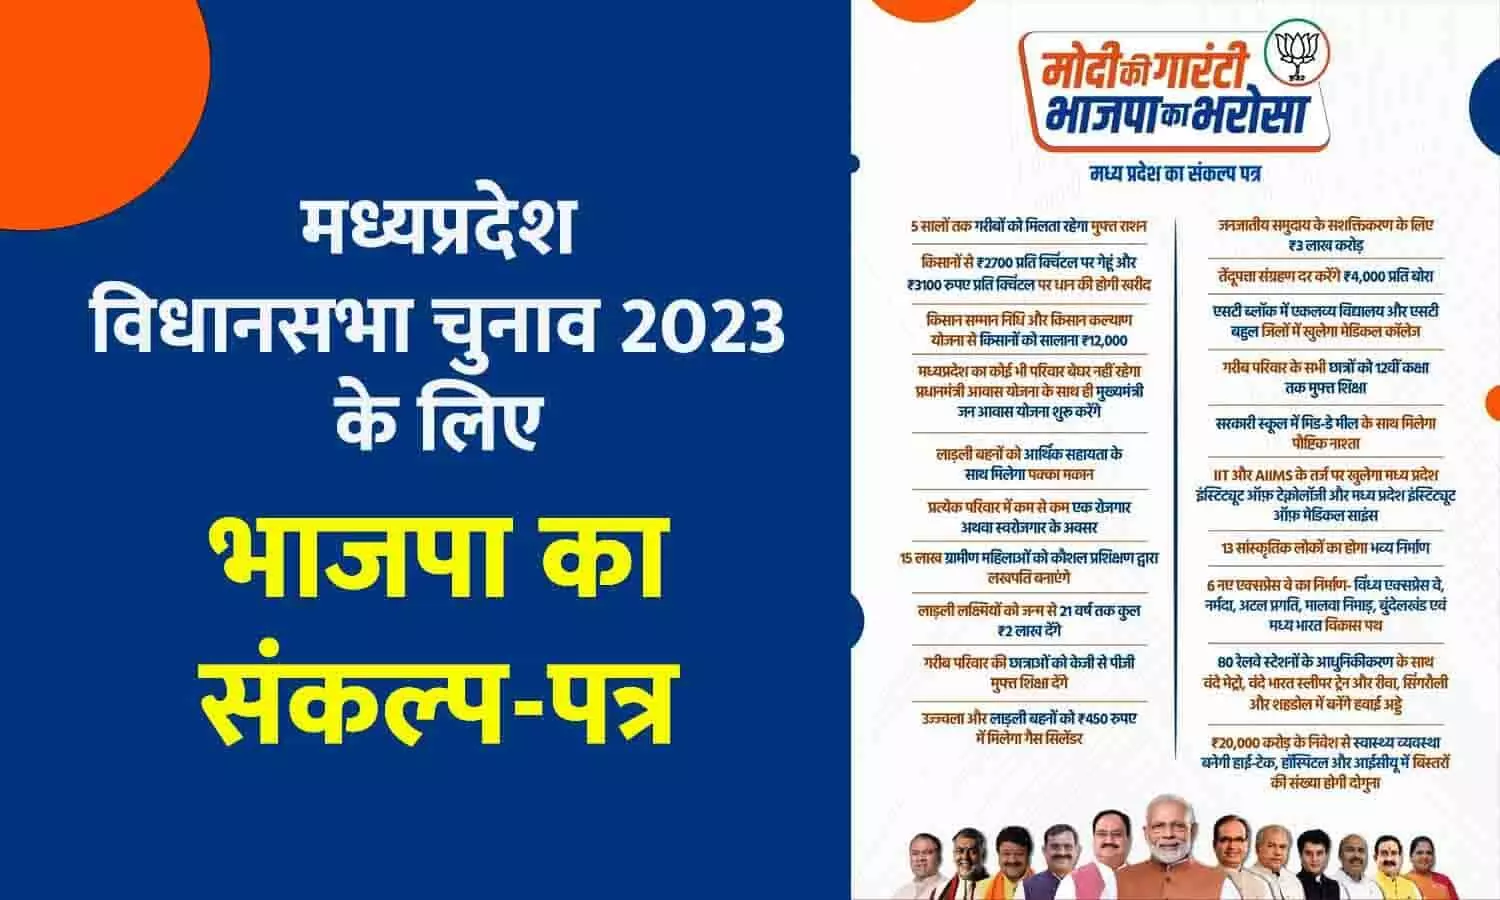 MP के लिए BJP का घोषणा-पत्र, हर वर्ग को साधा: सीनियर सिटीजन-दिव्यांगों को 1500 मासिक पेंशन, हर परिवार में एक को रोजगार; लाड़ली बहनों को पक्का मकान